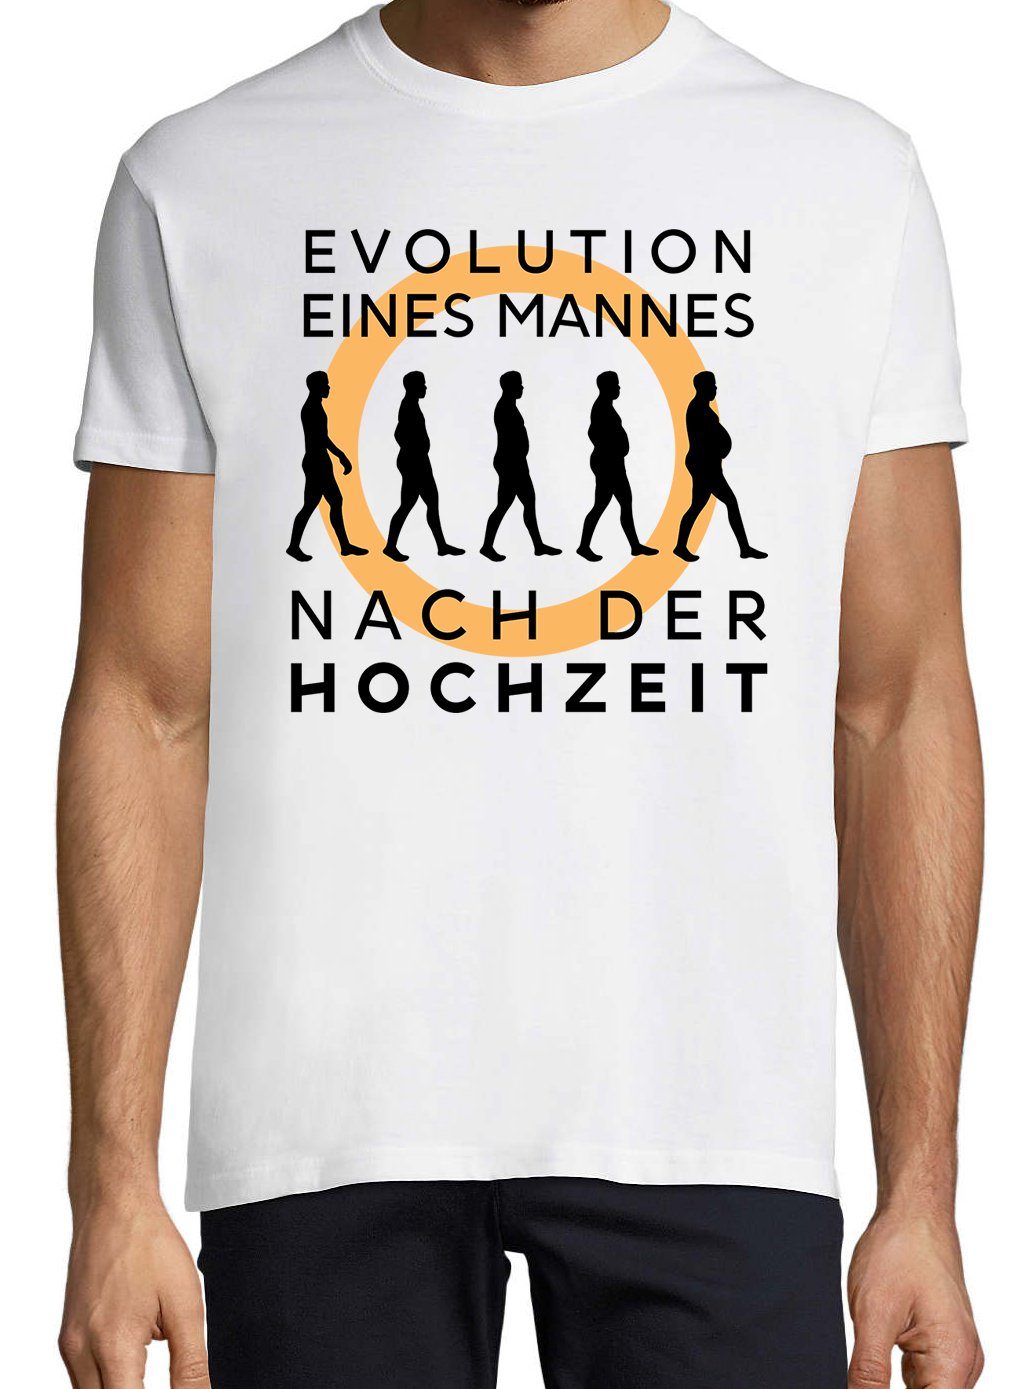 Hochzeit Designz Frontprint T-Shirt Evolution mit nach der trendigem Shirt Weiß Youth Herren